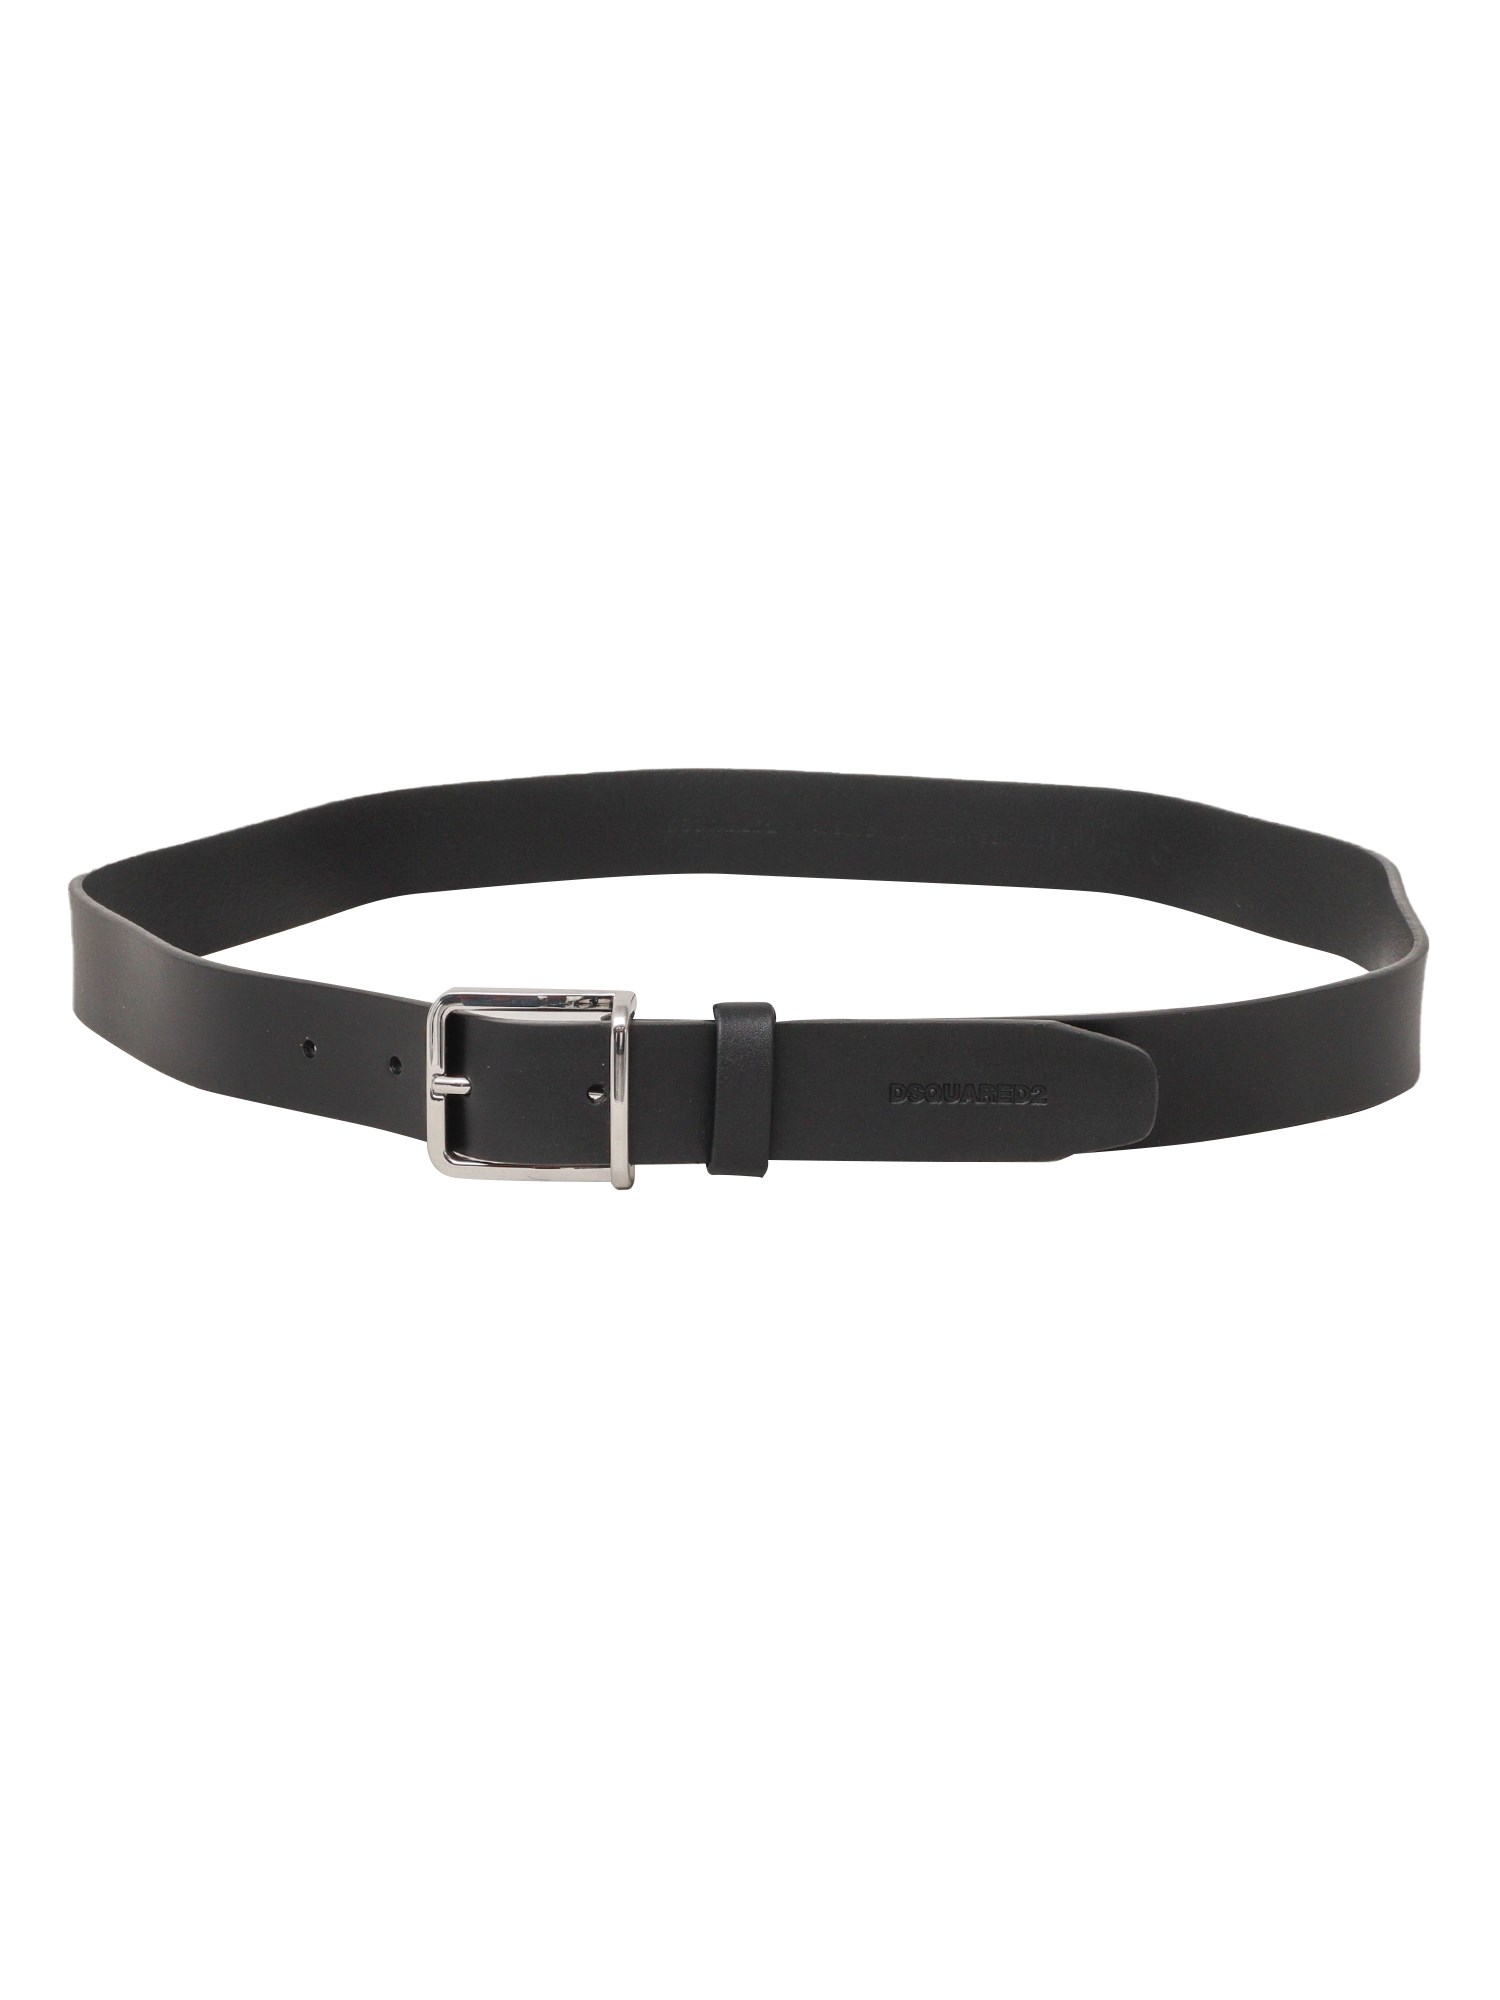 D-squared2 Black Leather Belt